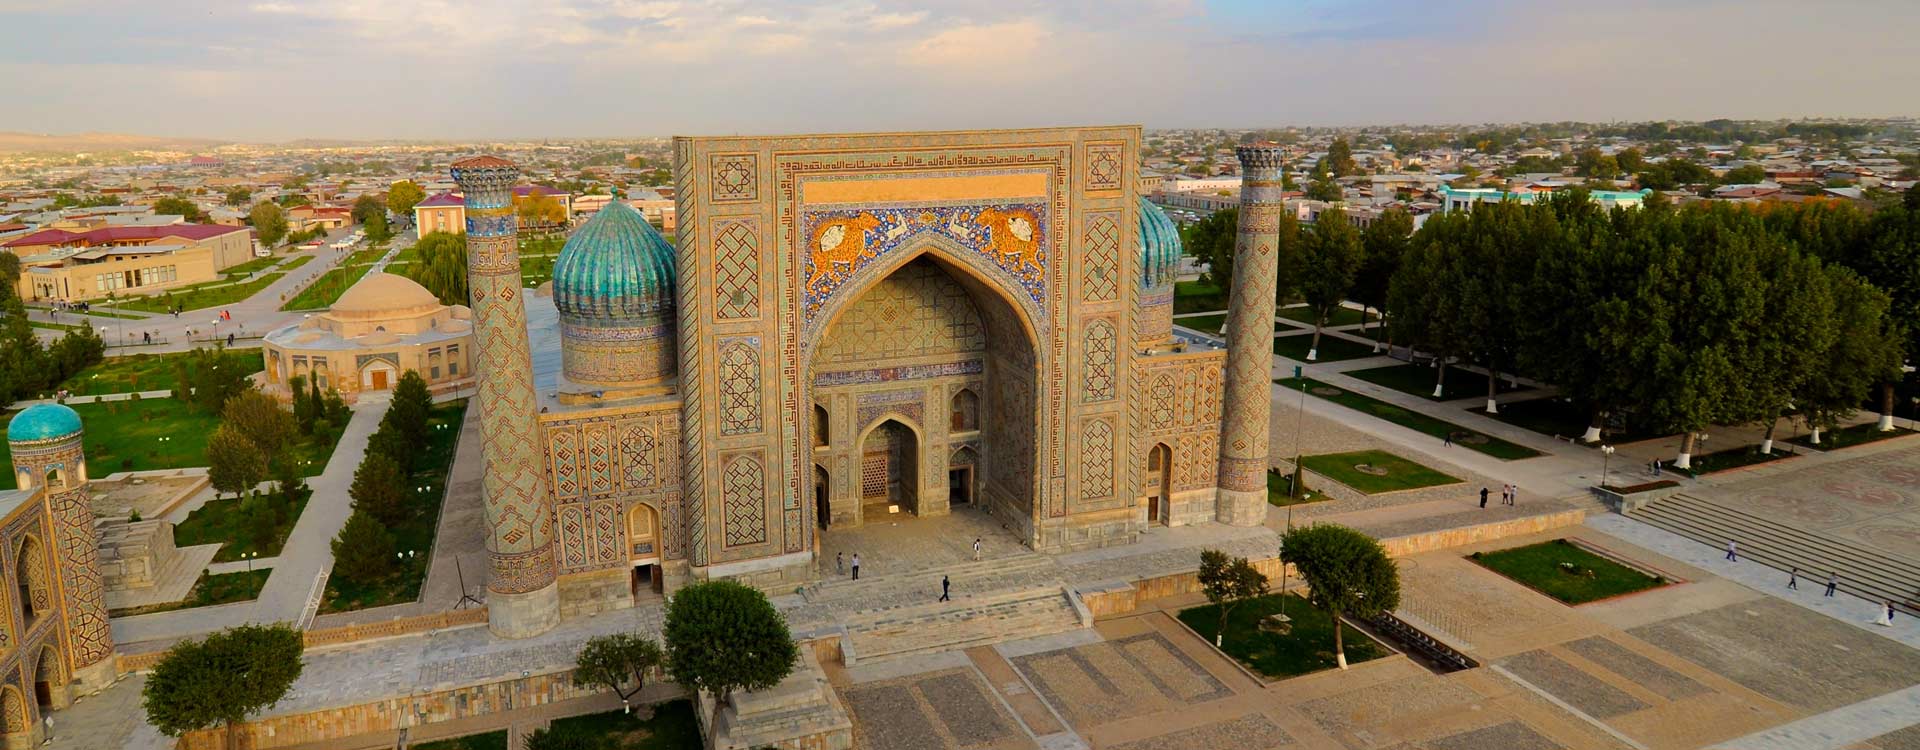 Uzbekistan Scenery